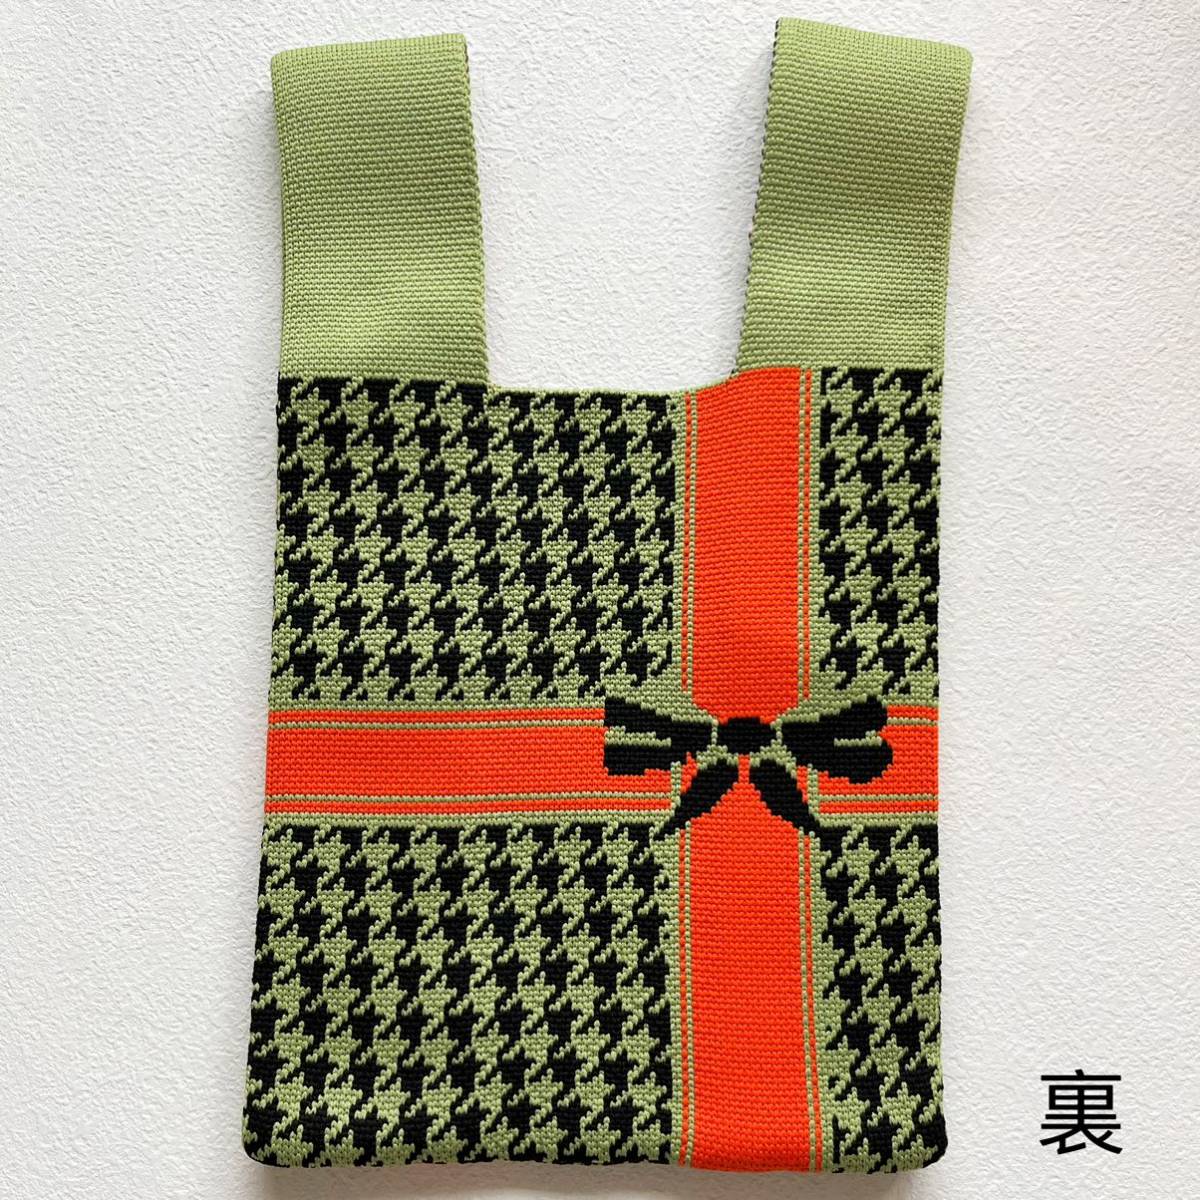 リボン 千鳥格子 ポーチ バッグ クラッチバッグ 手持ちバッグ お弁当袋 女性 最新 可愛い ハンドバッグ 韓国 編みバッグ_画像6